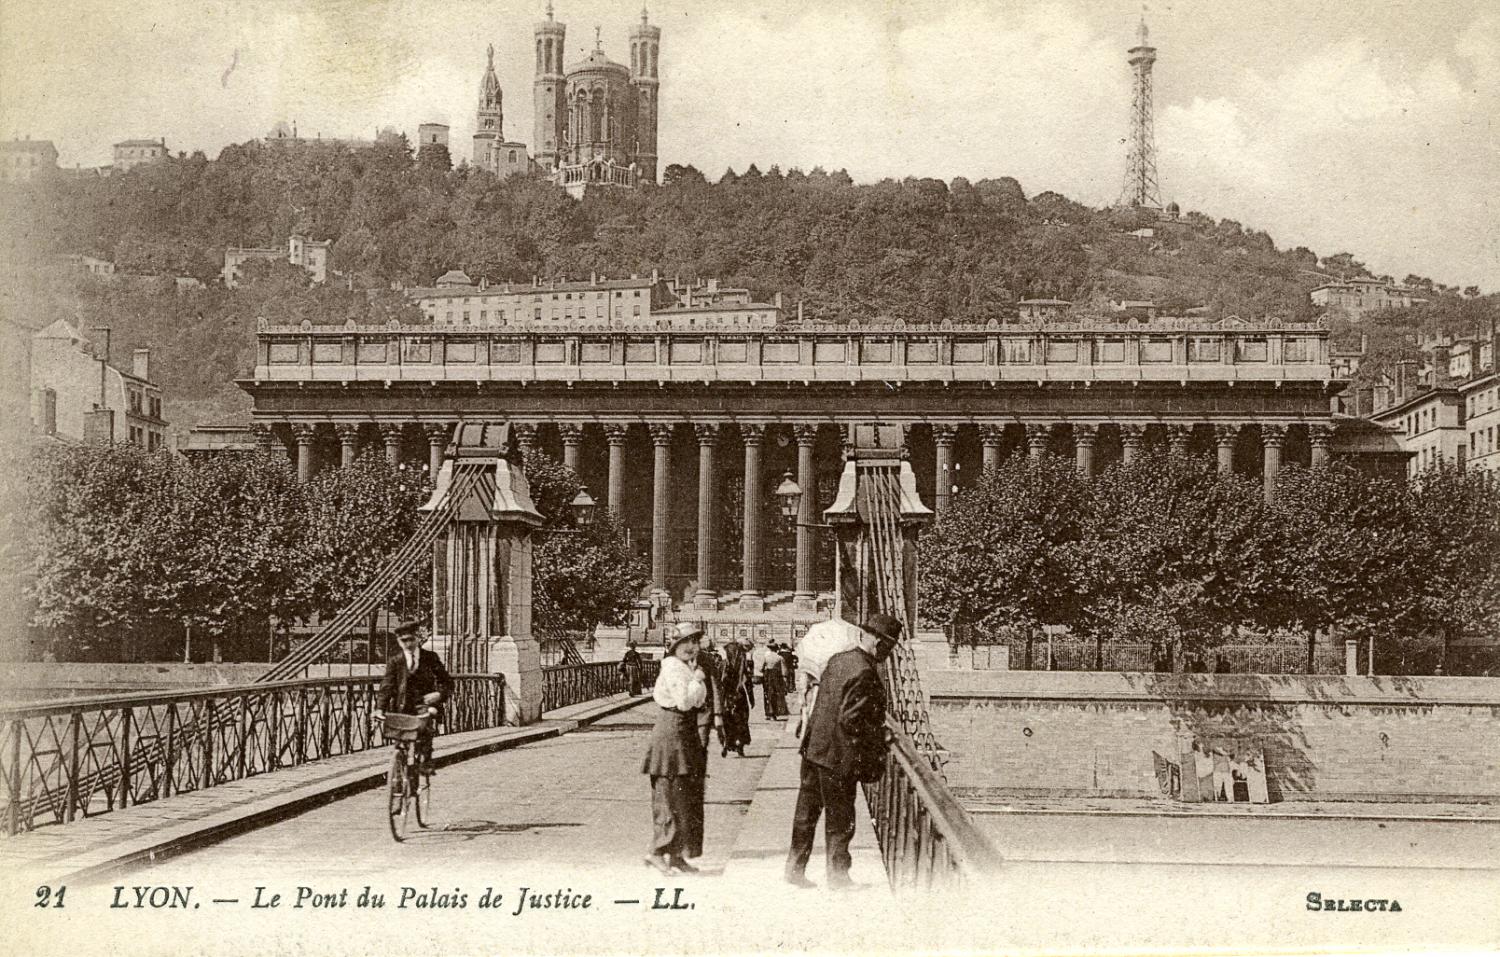 Lyon - Le Pont du Palais de Justice